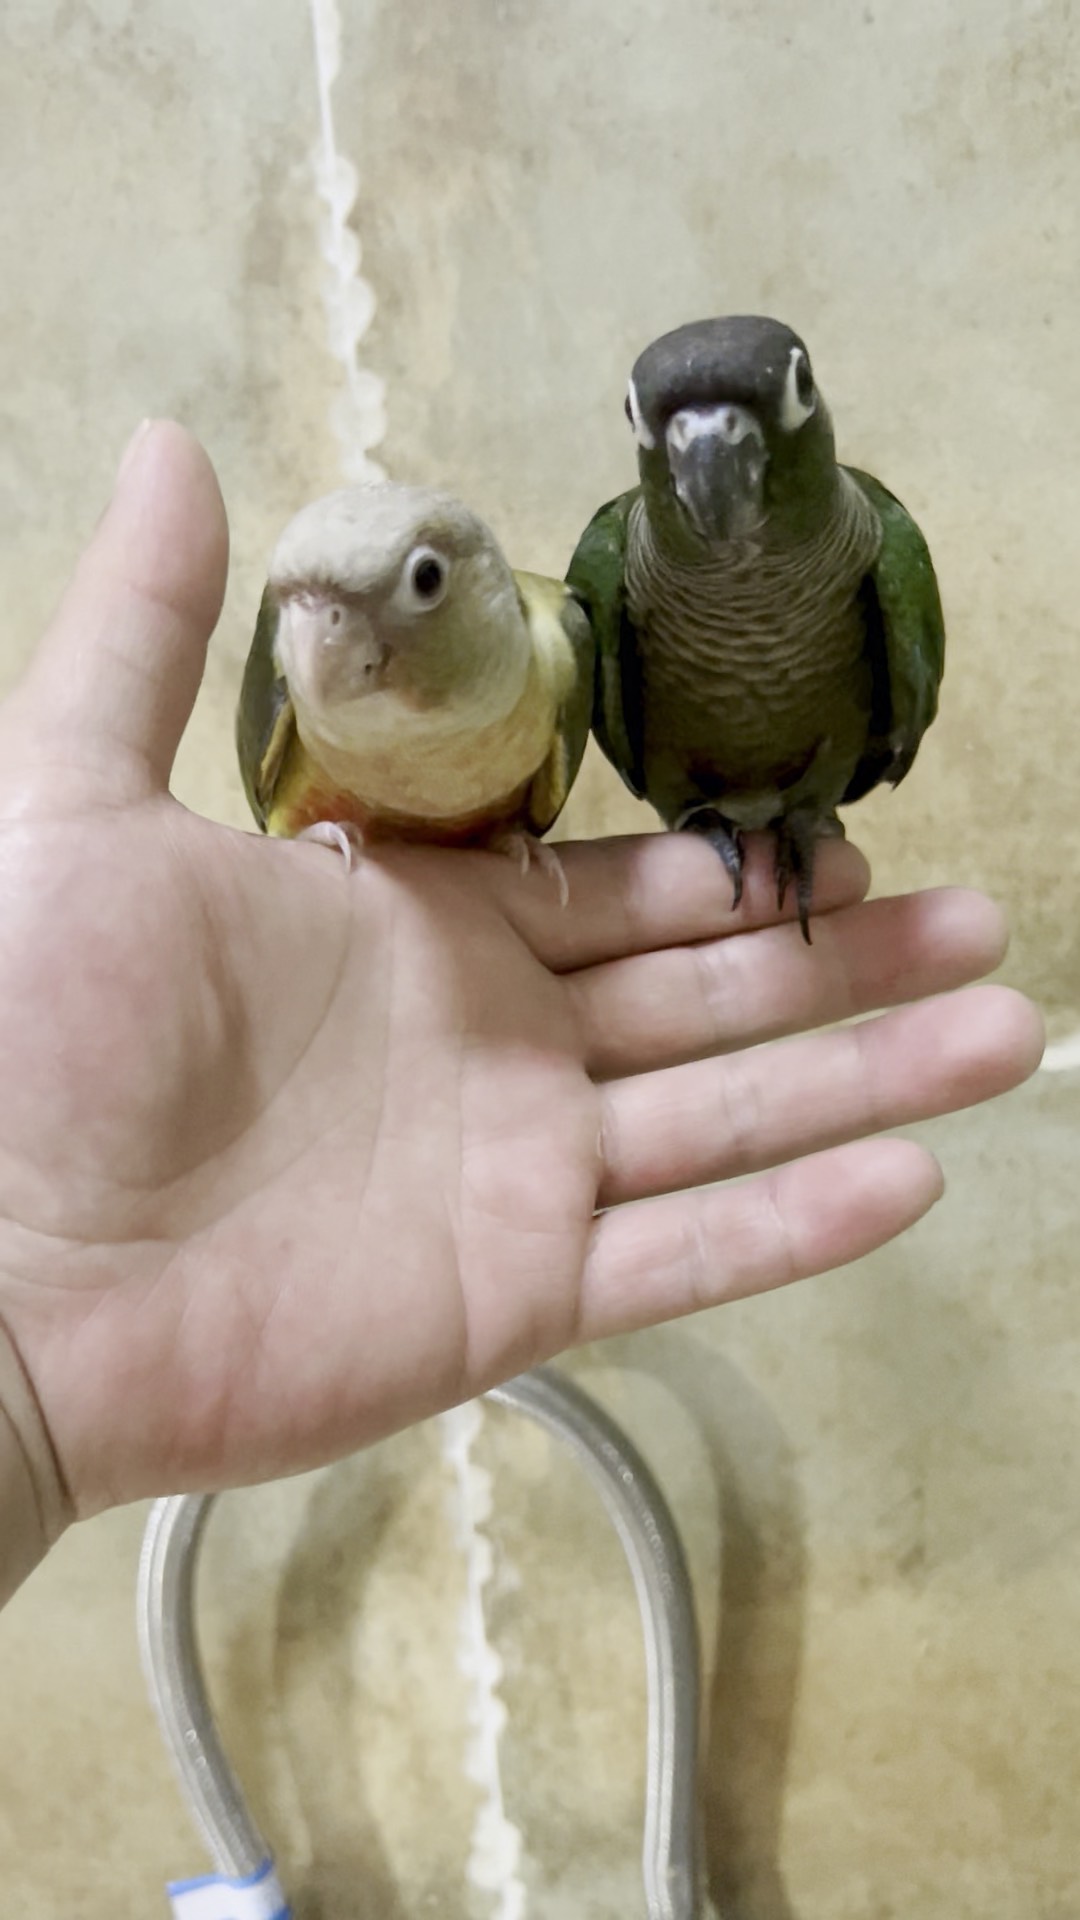 鹦鹉人工孵化教程图片